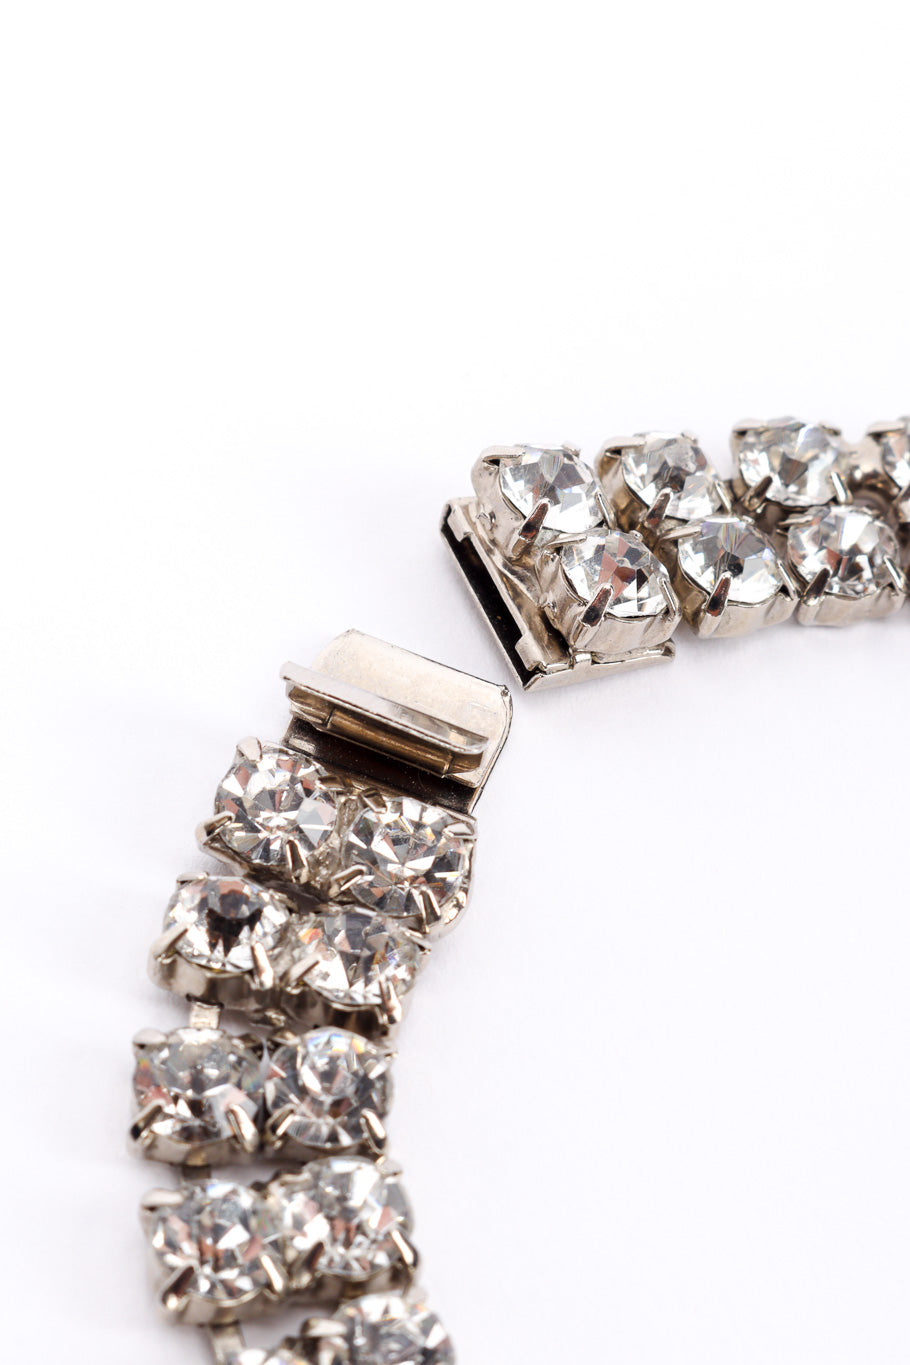 Vintage Crystal Cluster Drop Necklace tab closure closeup @recessla